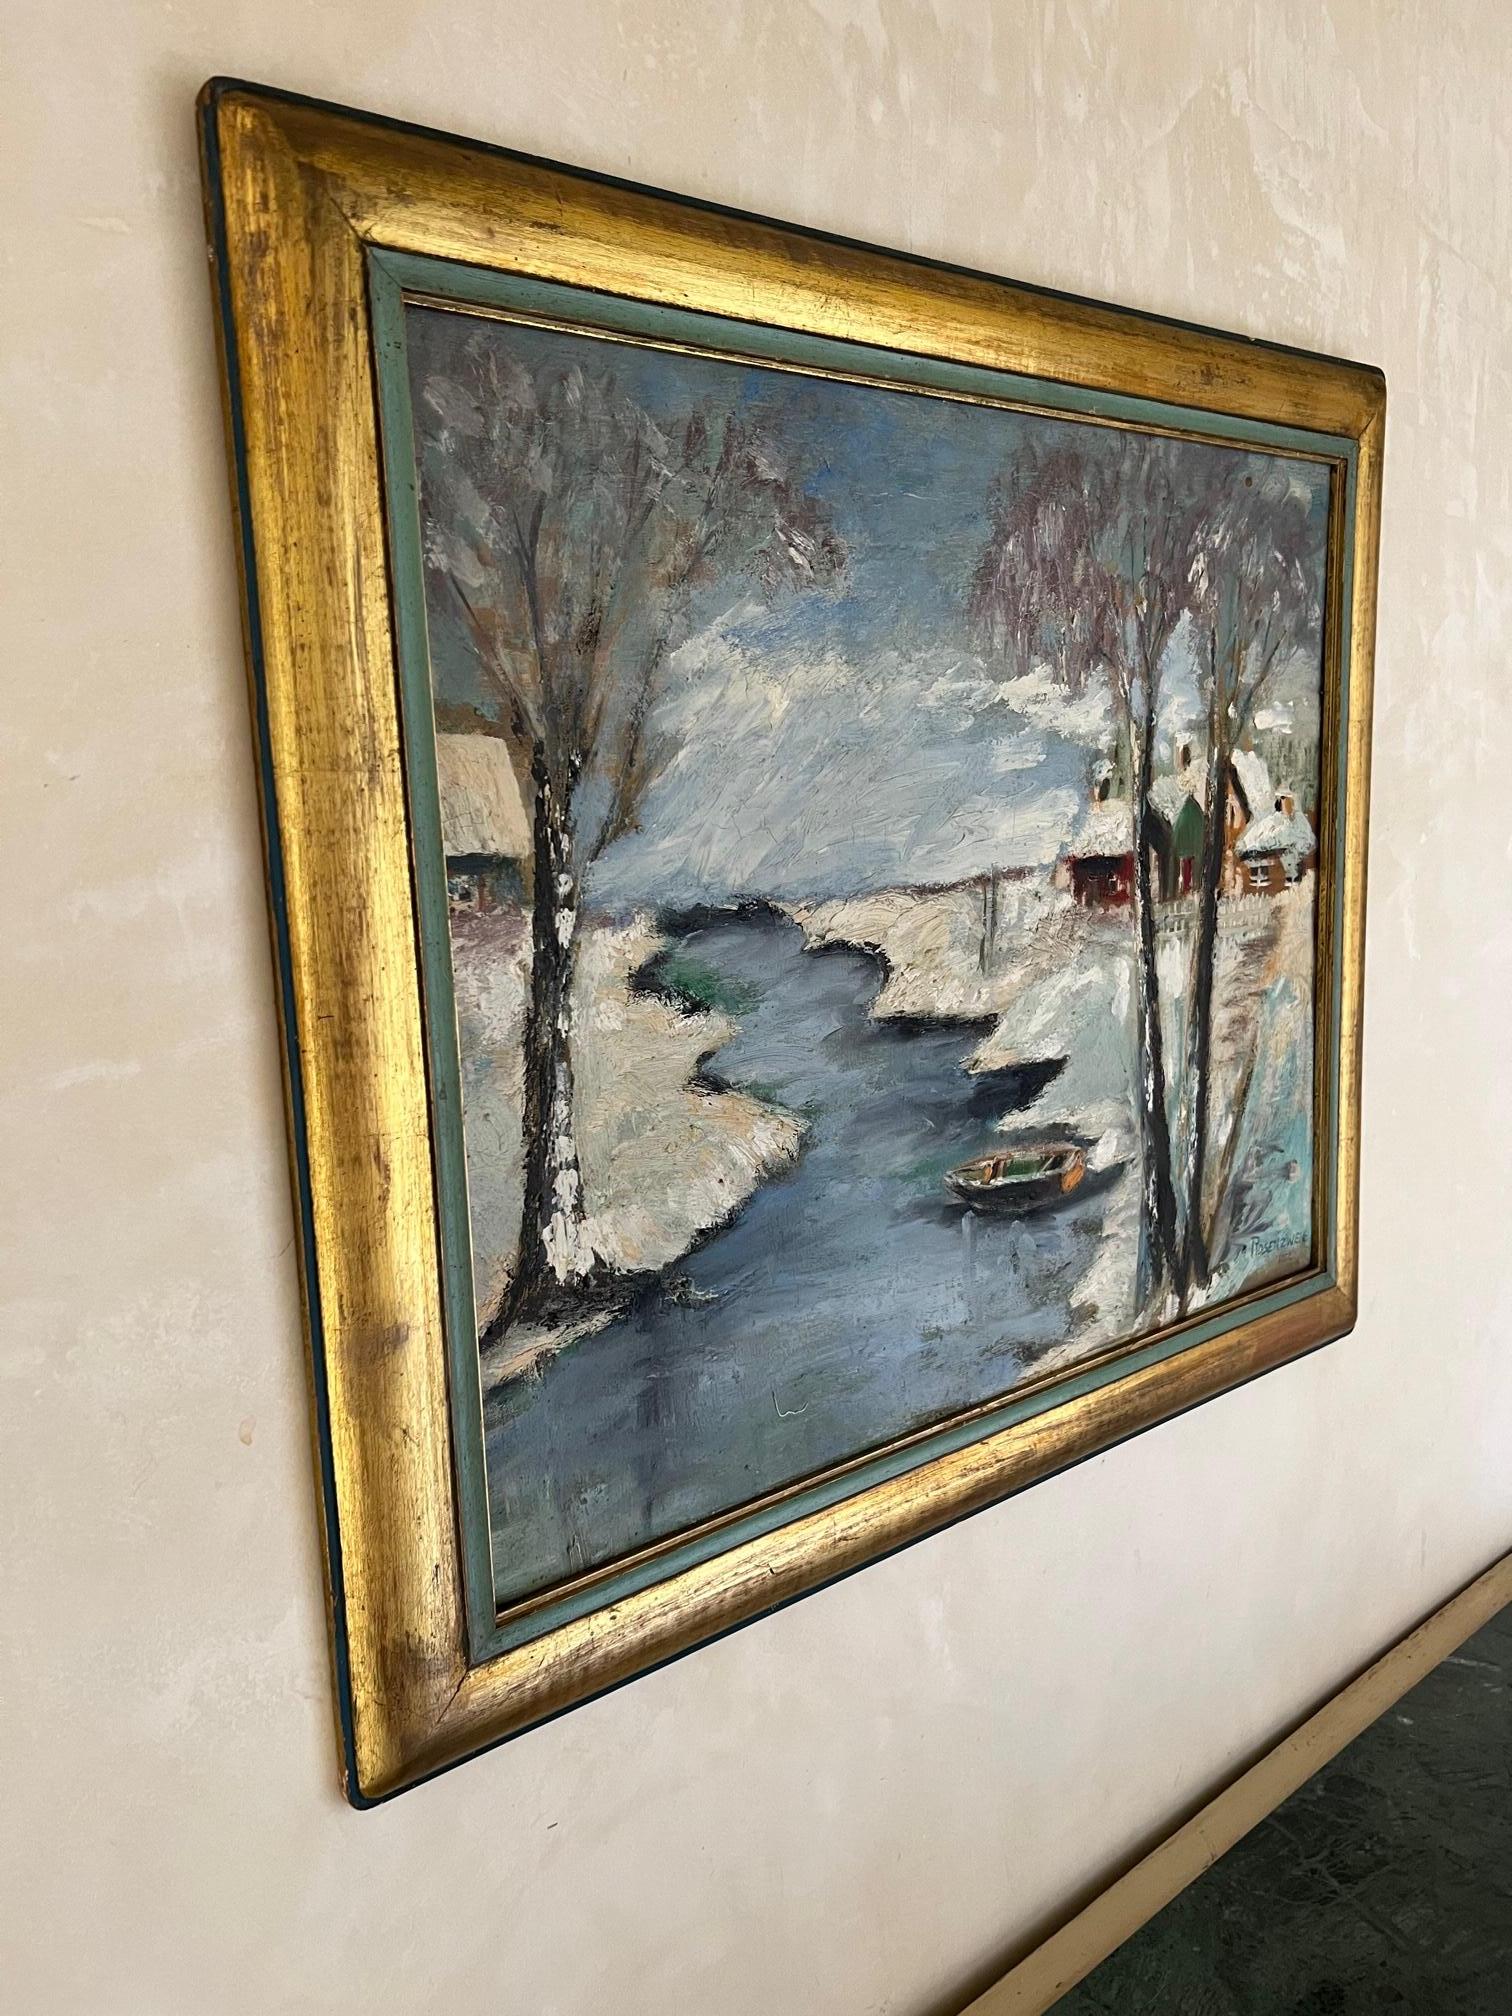 Paysage d'hiver, peinture à l'huile sur panneau de l'artiste américain classé Irving Rosenzweig (1915-1983).
Signé Rosenzweig 1952.
Joliment encadré dans un cadre en bois peint en or et d'un bleu verdâtre.

Dimensions de la peinture 24 de large